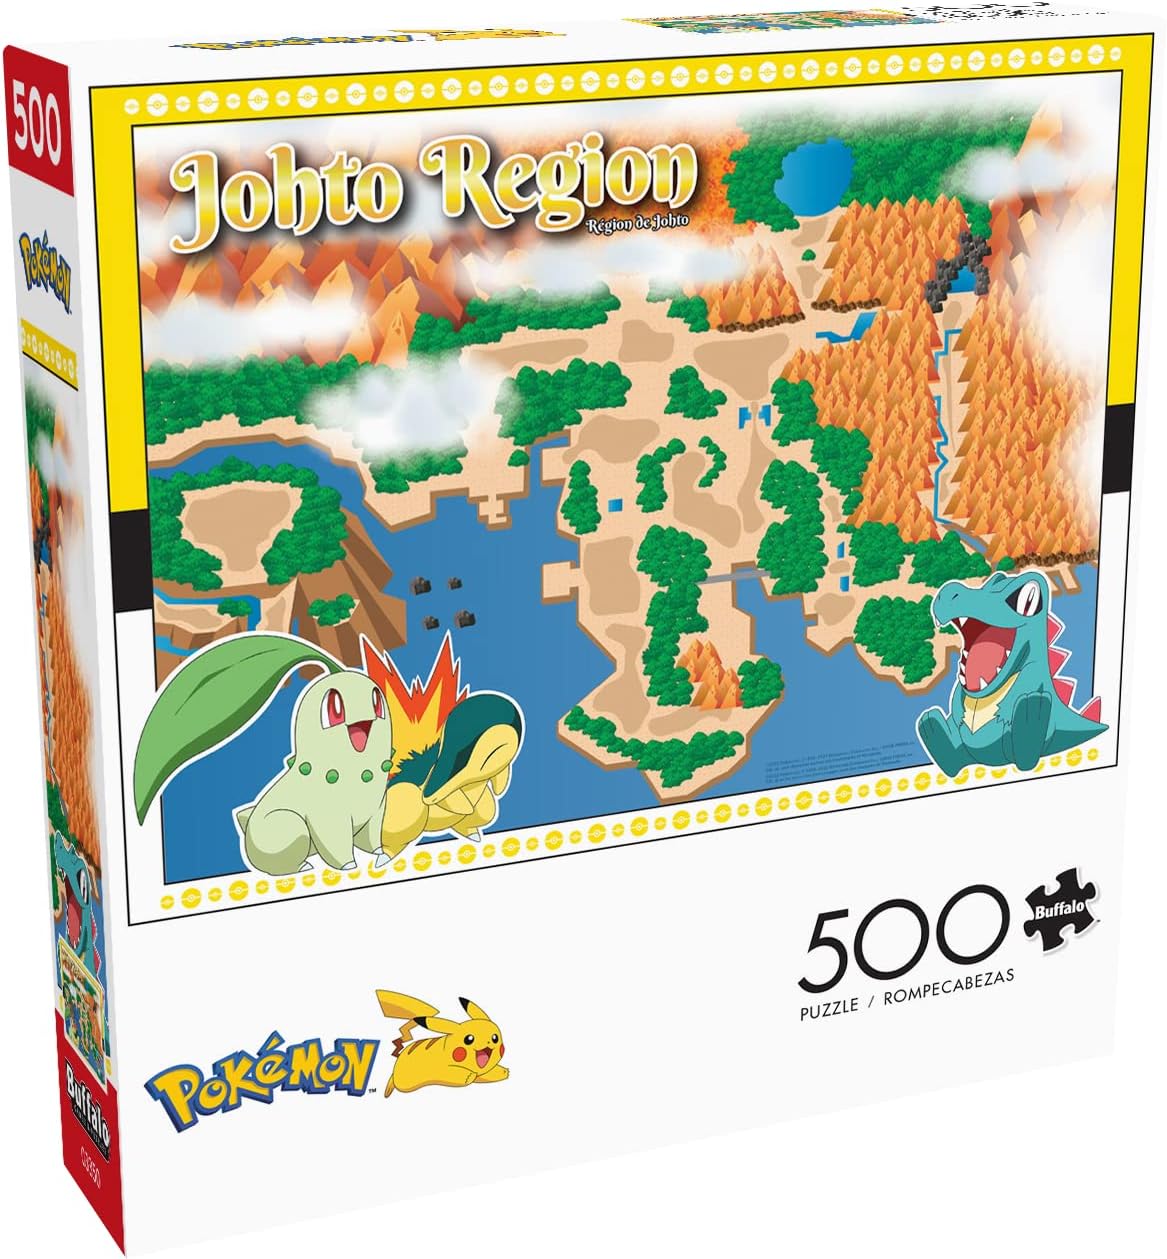 Pokémon Jigsaw Puzzle Pokemon Yellow Pikachu & Friends 500 Pieces Buffalo  NEW